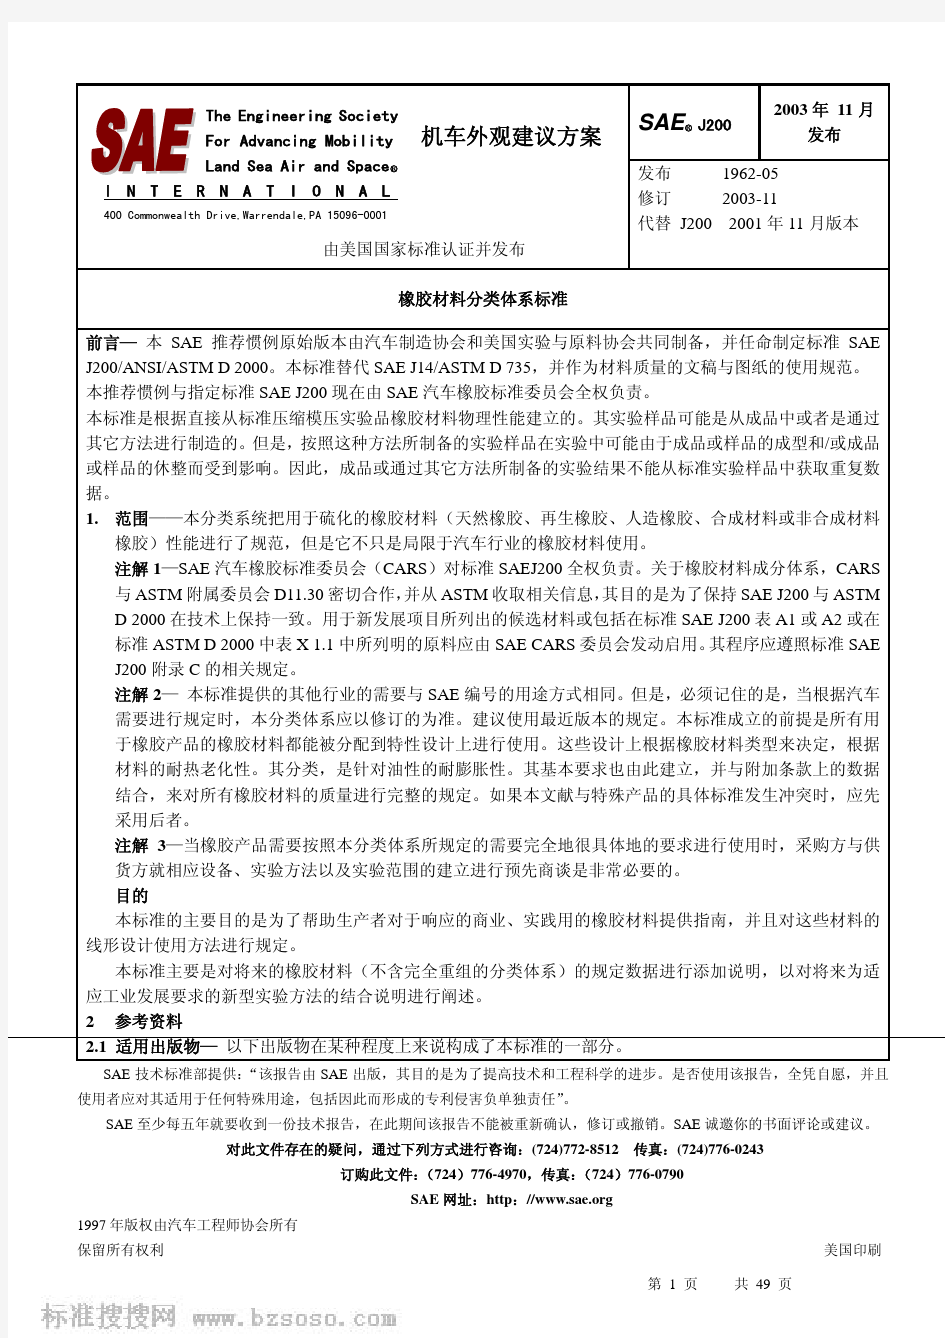 SAE_J200-2003(中文版)_橡胶材料分类体系标准